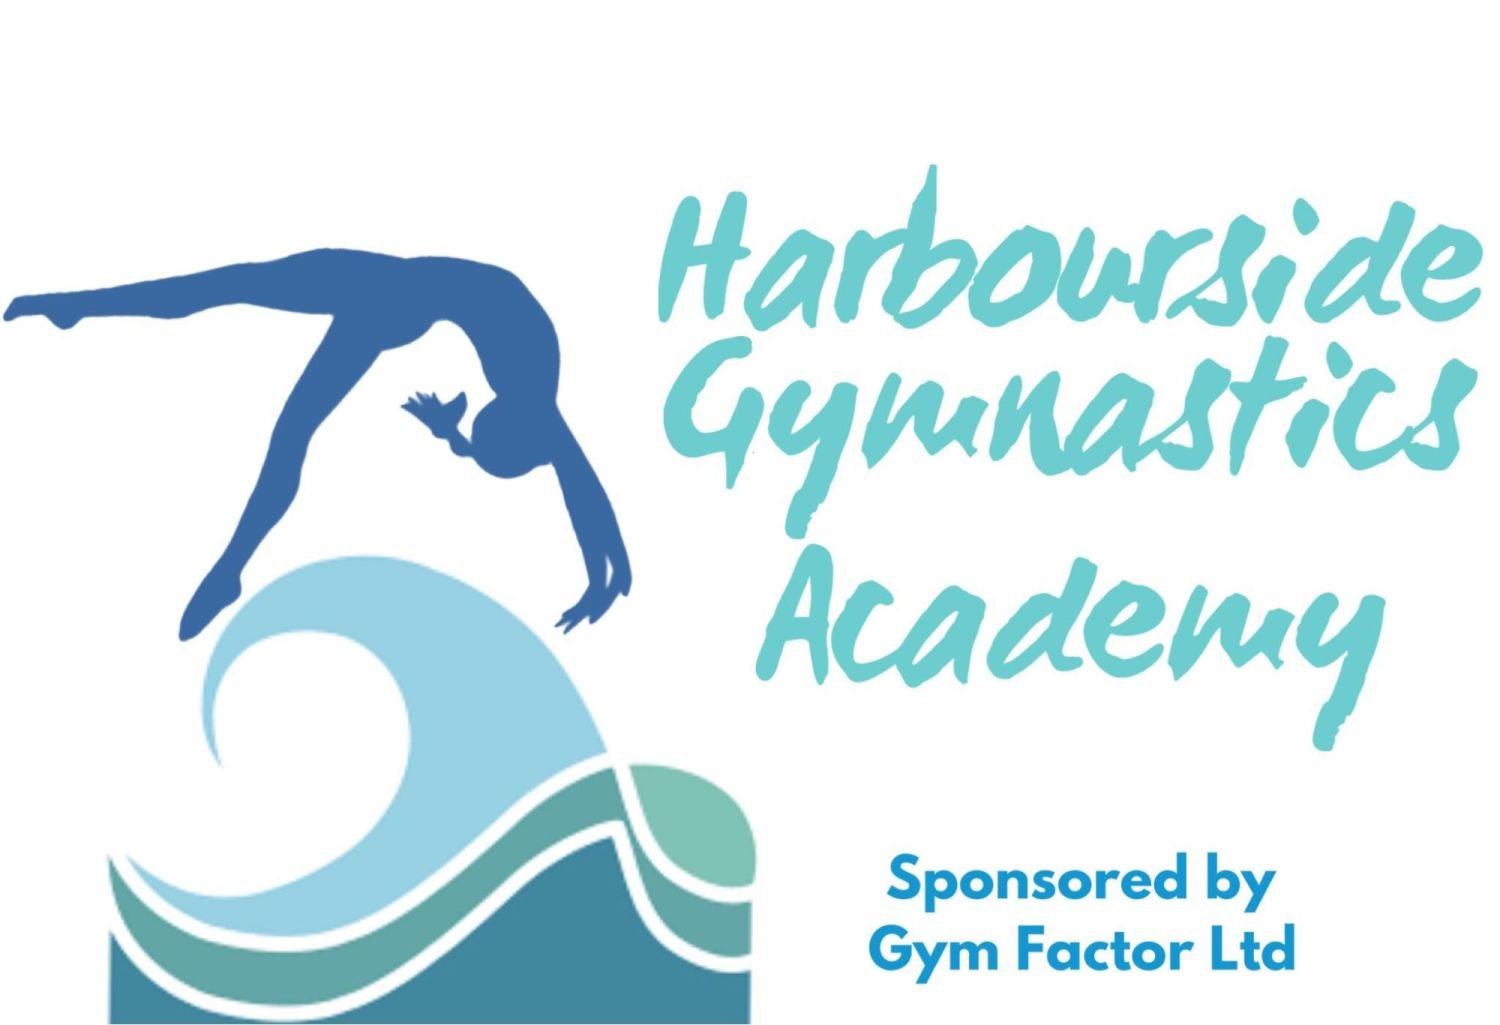 Harbourside Gymnastics Academy logo